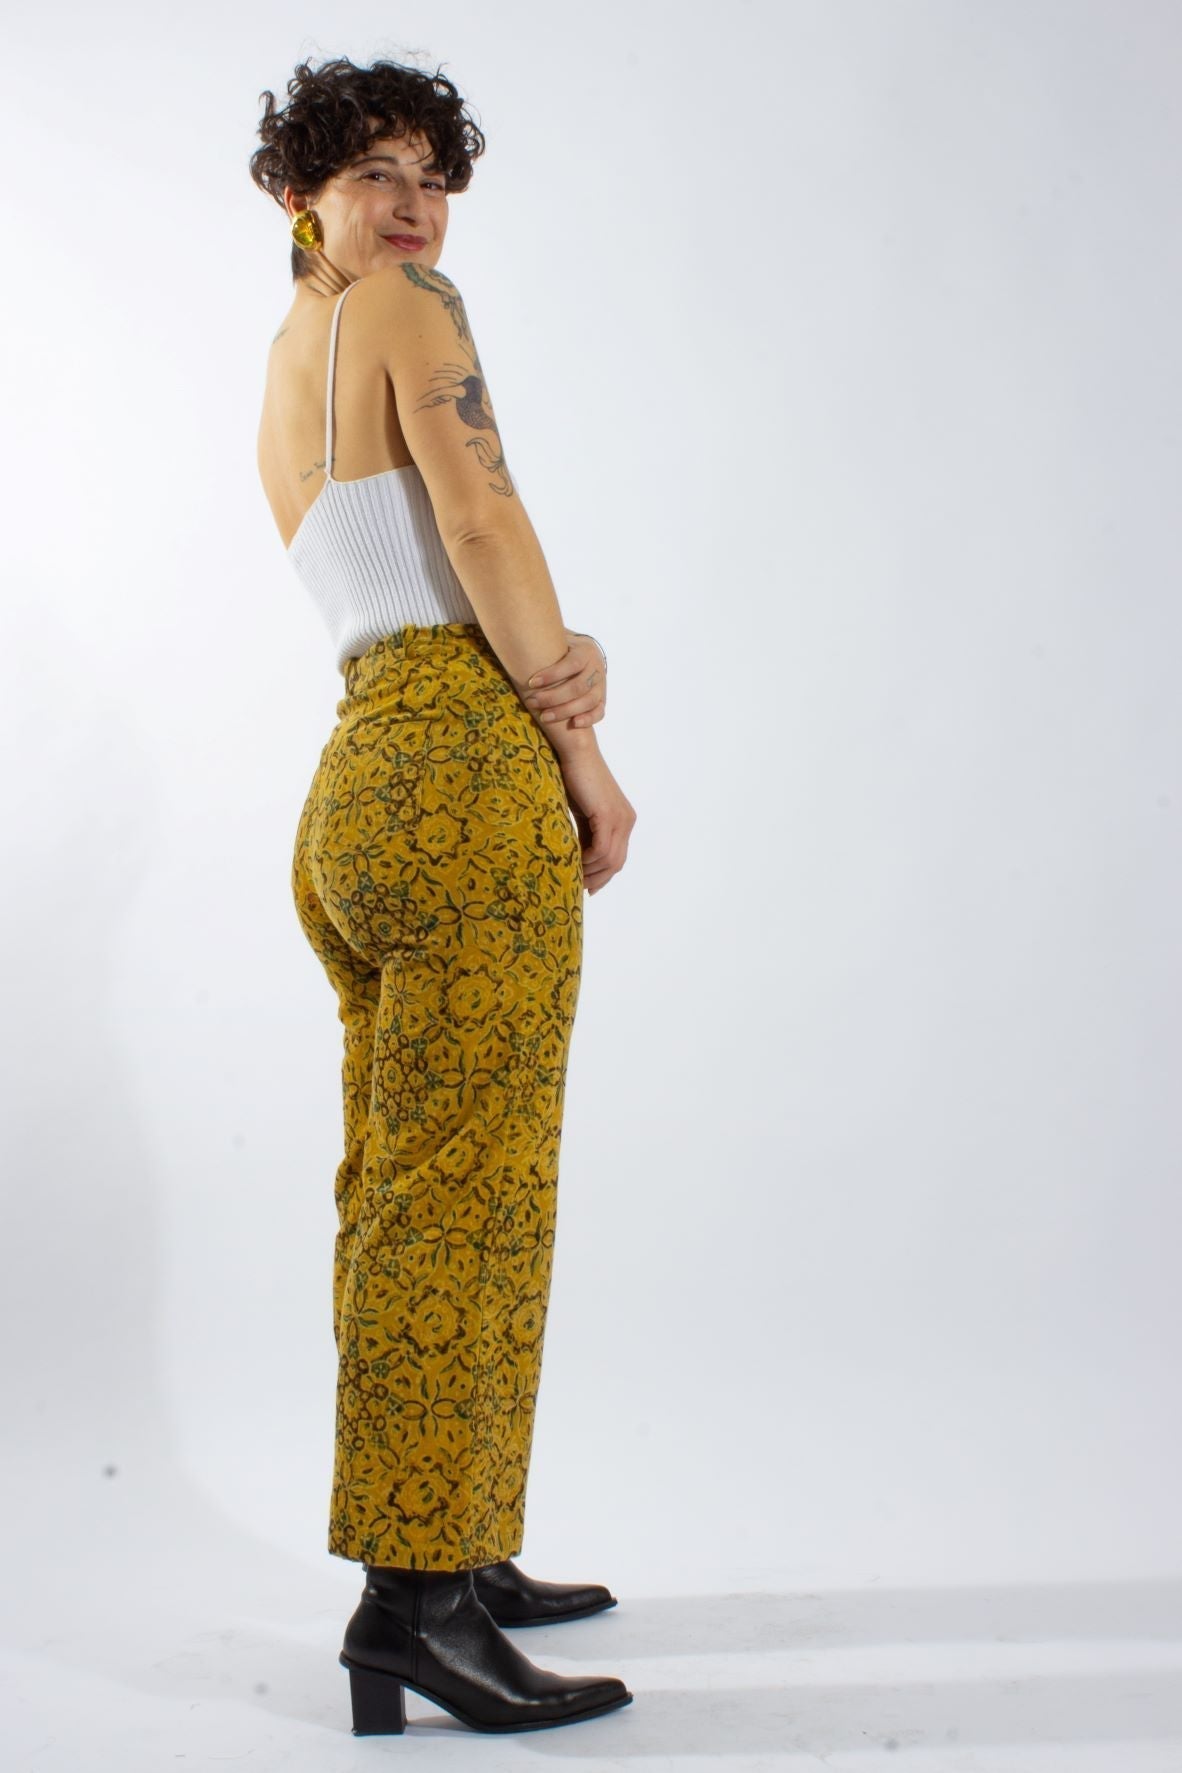 Pantalon GWALIOR - coloris Surya - Velours côtelé coton bio & chanvre - Pantalons - Azaadi, la mode responsable accessible